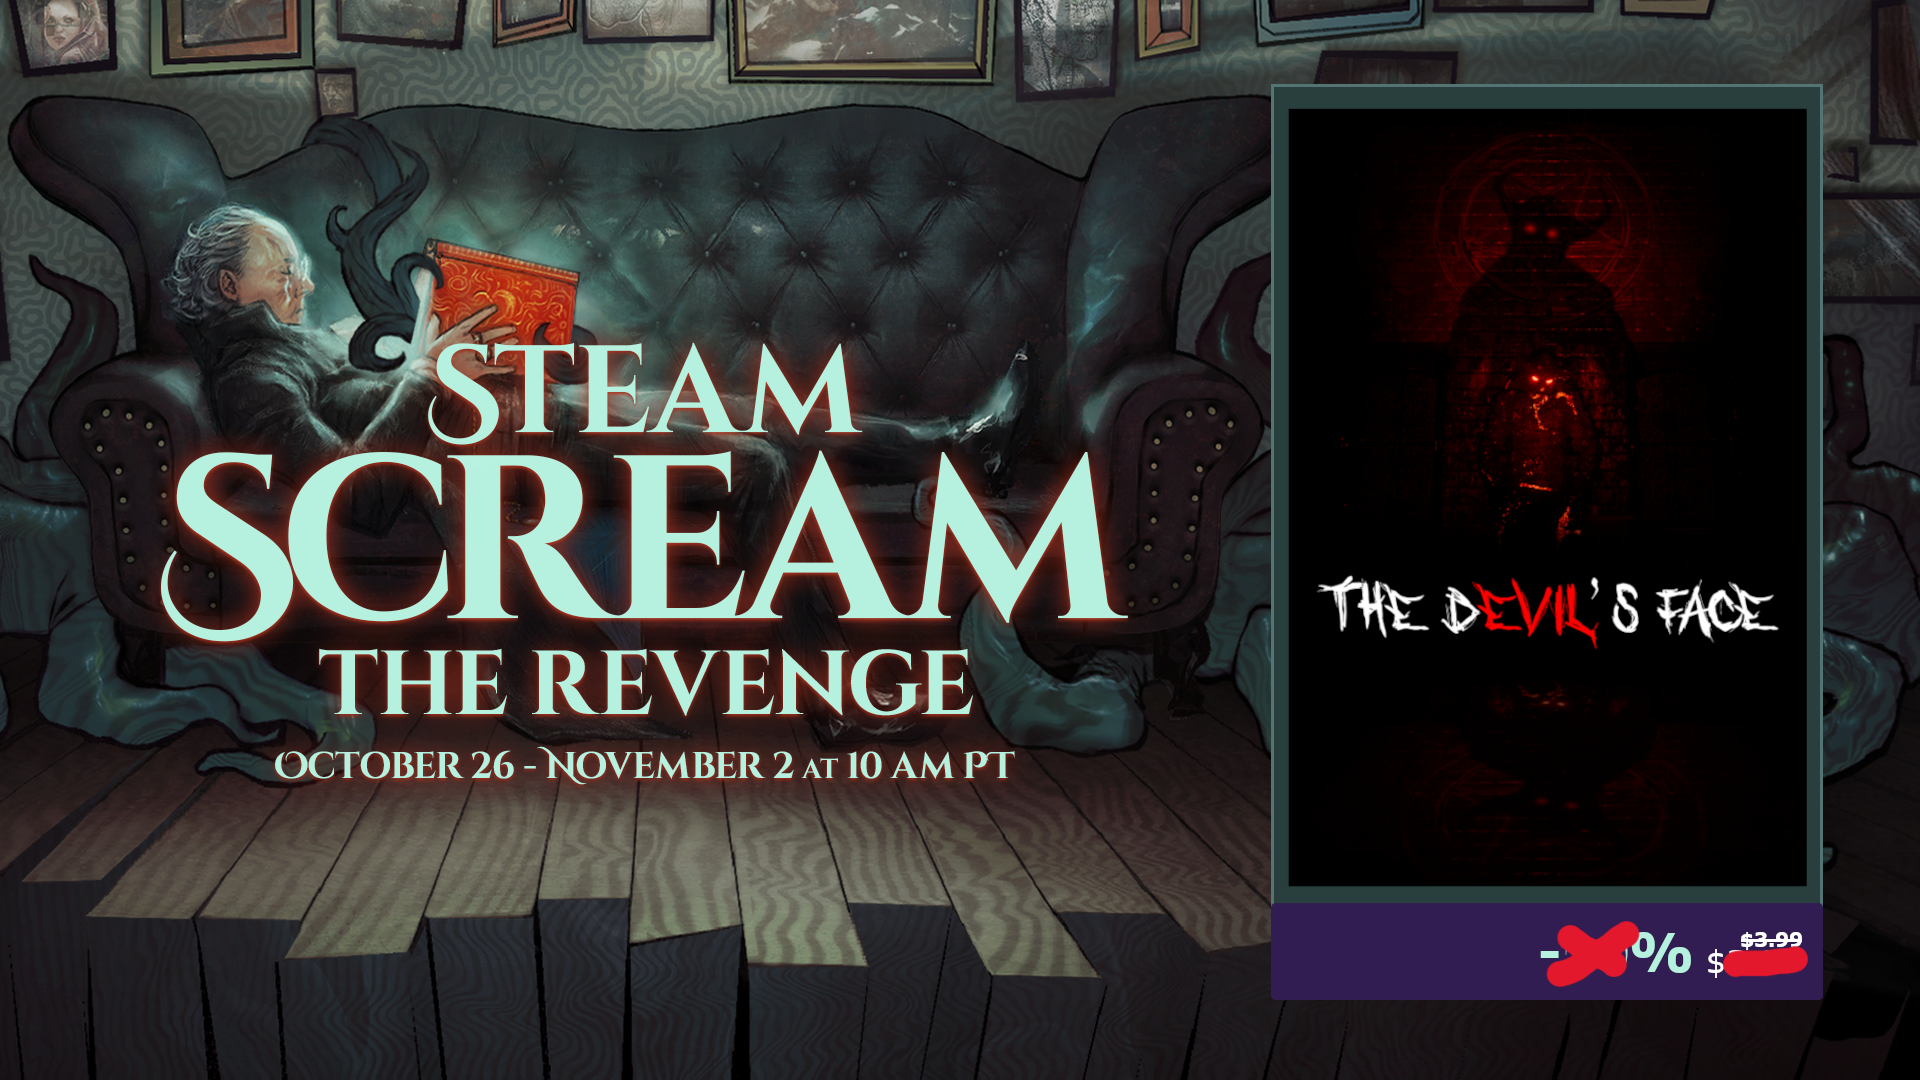 “The Devil’s Face” Joins Steam Scream: The Revenge Event!